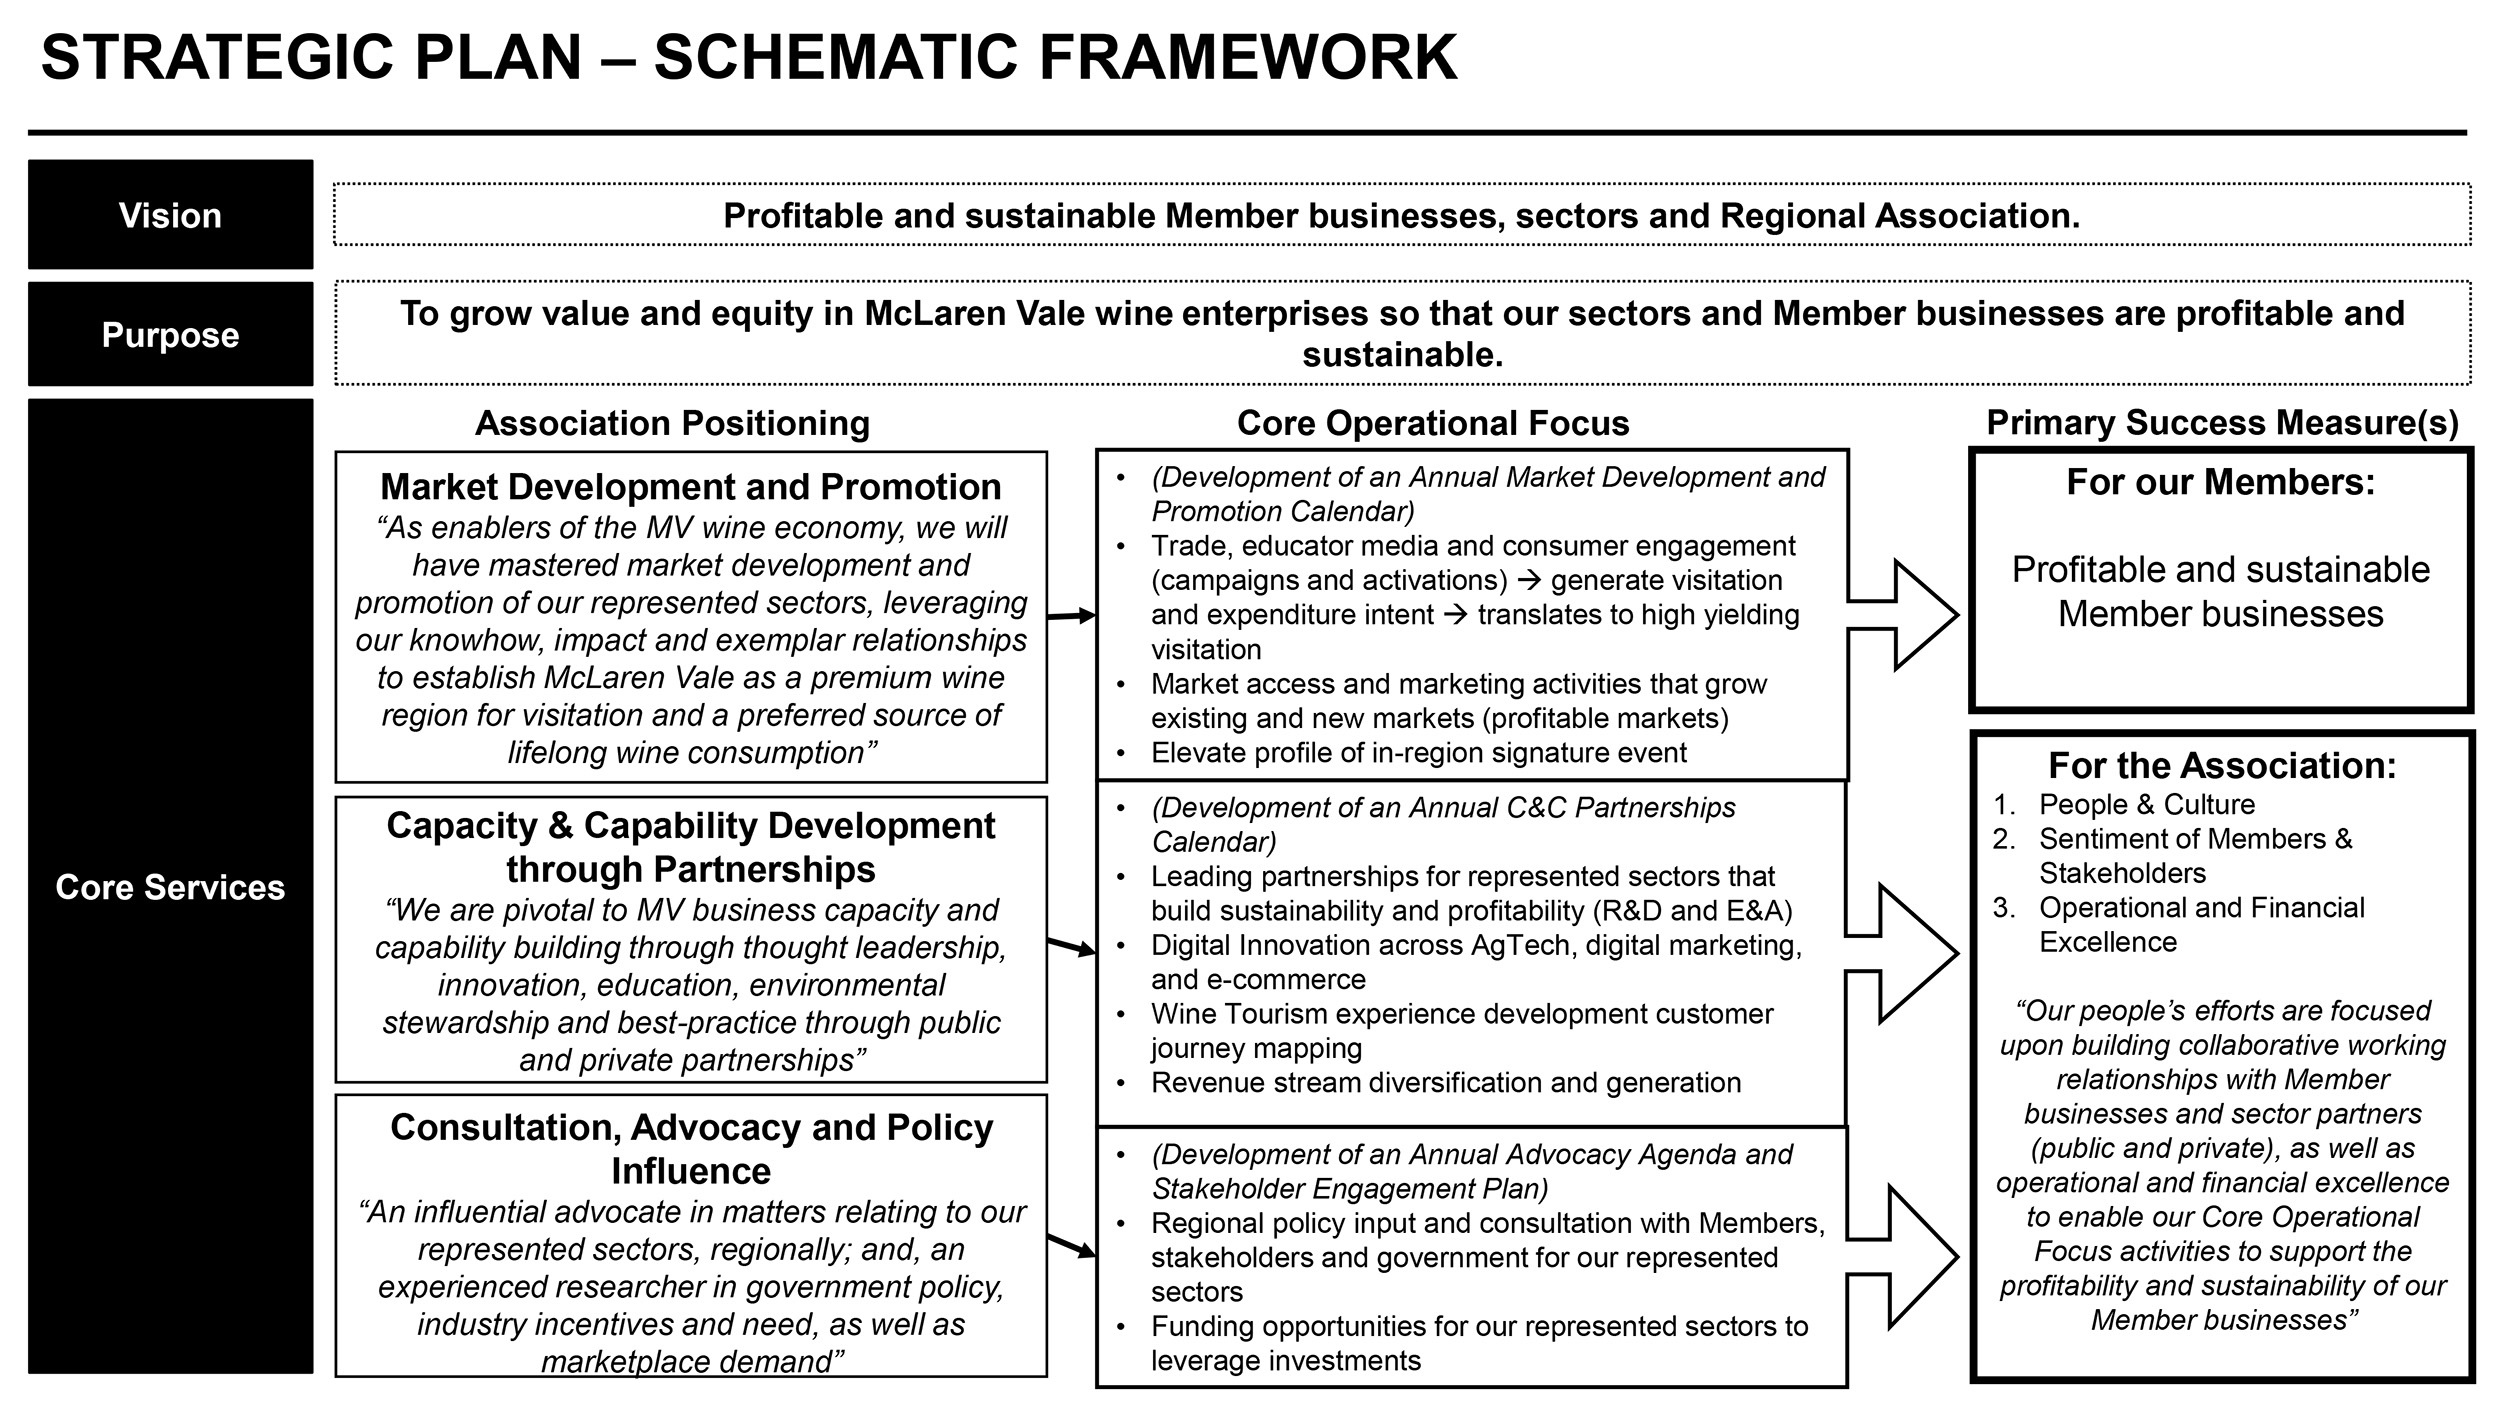 MVGWTA Strategic Plan Schematic Framework